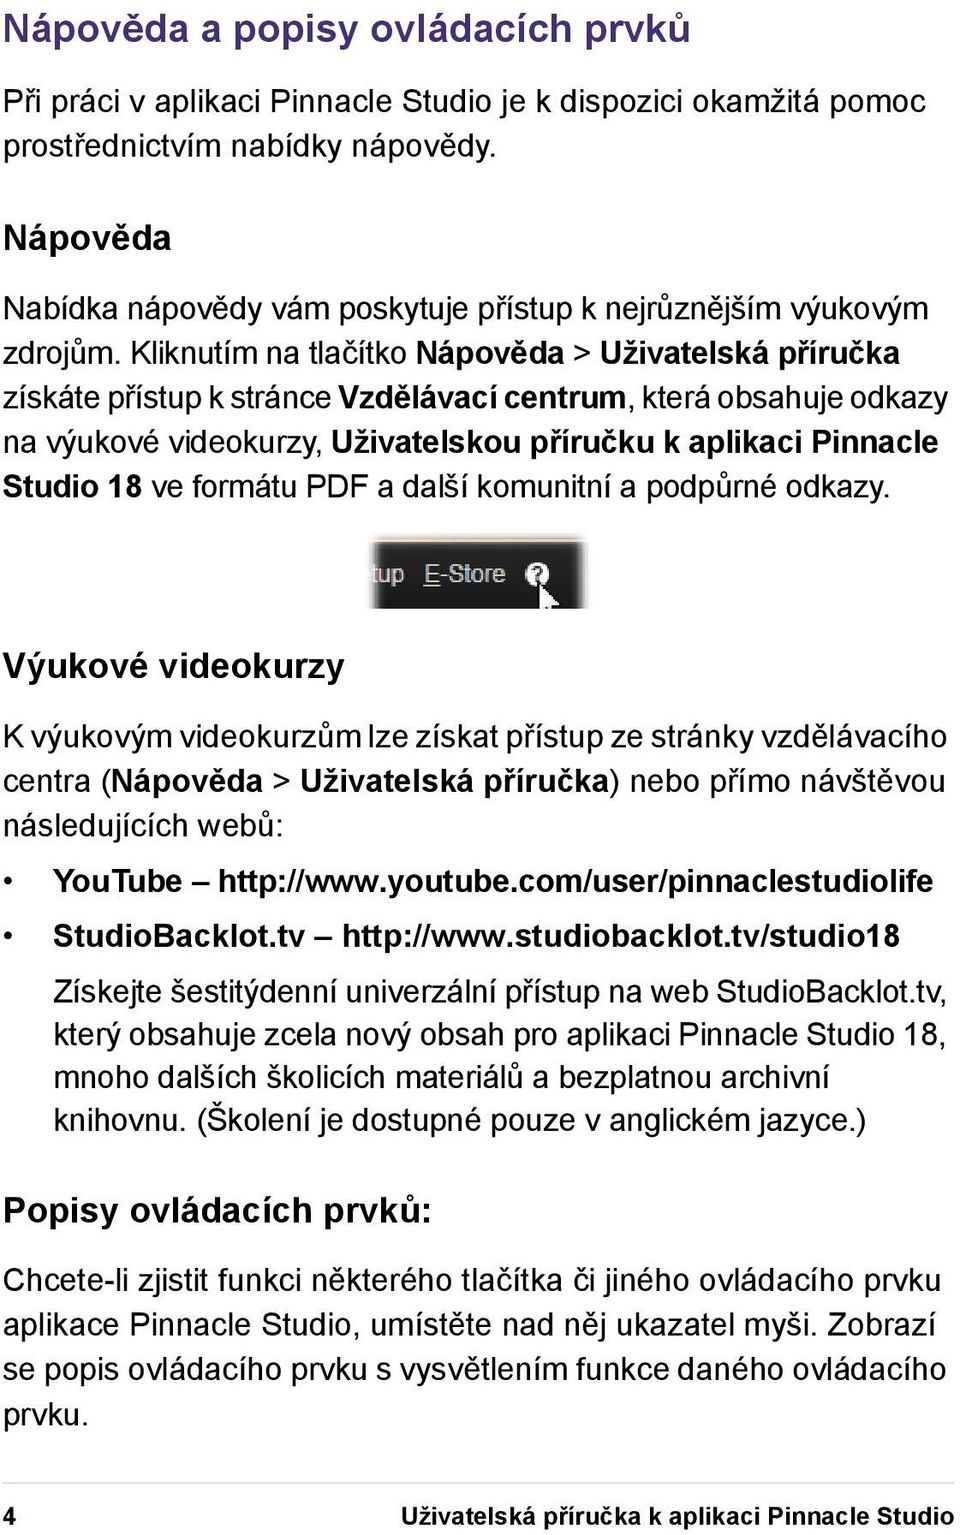 Kliknutím na tlačítko Nápověda > Uživatelská příručka získáte přístup k stránce Vzdělávací centrum, která obsahuje odkazy na výukové videokurzy, Uživatelskou příručku k aplikaci Pinnacle Studio 18 ve